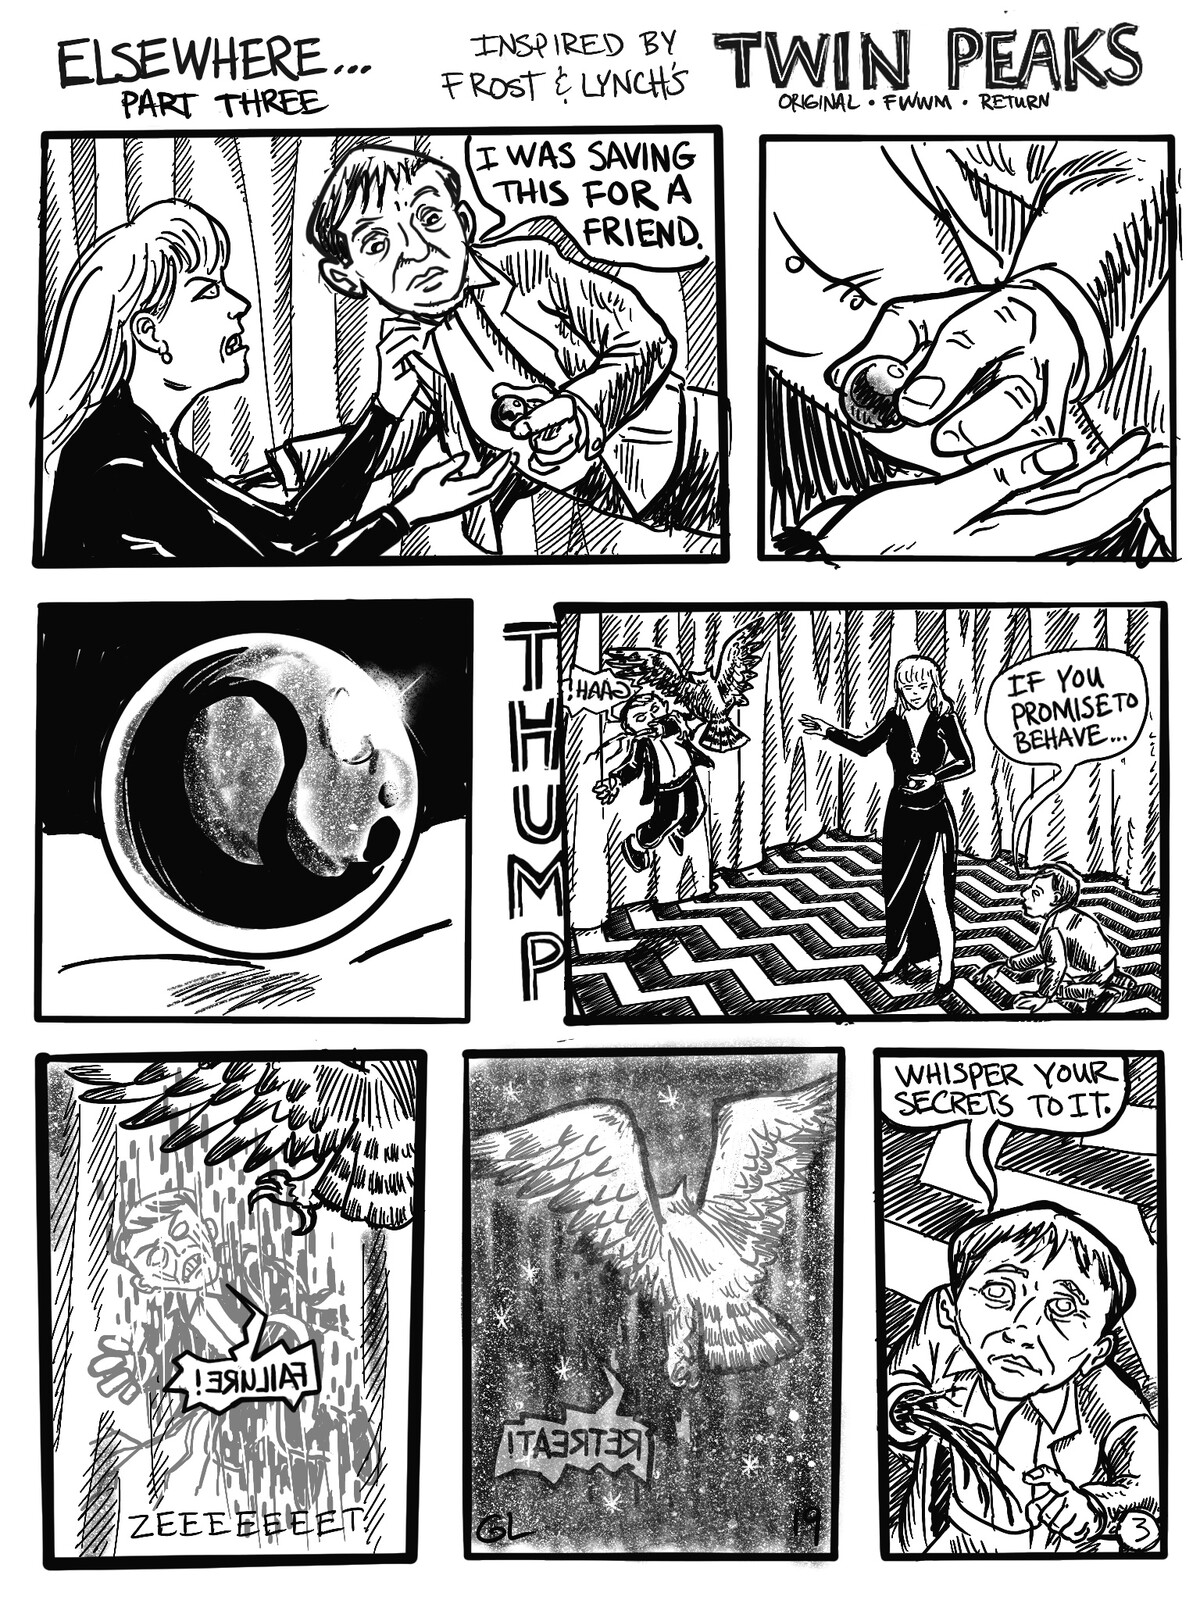 Twin Peaks: Elsewhere
A fan comic. Page 3